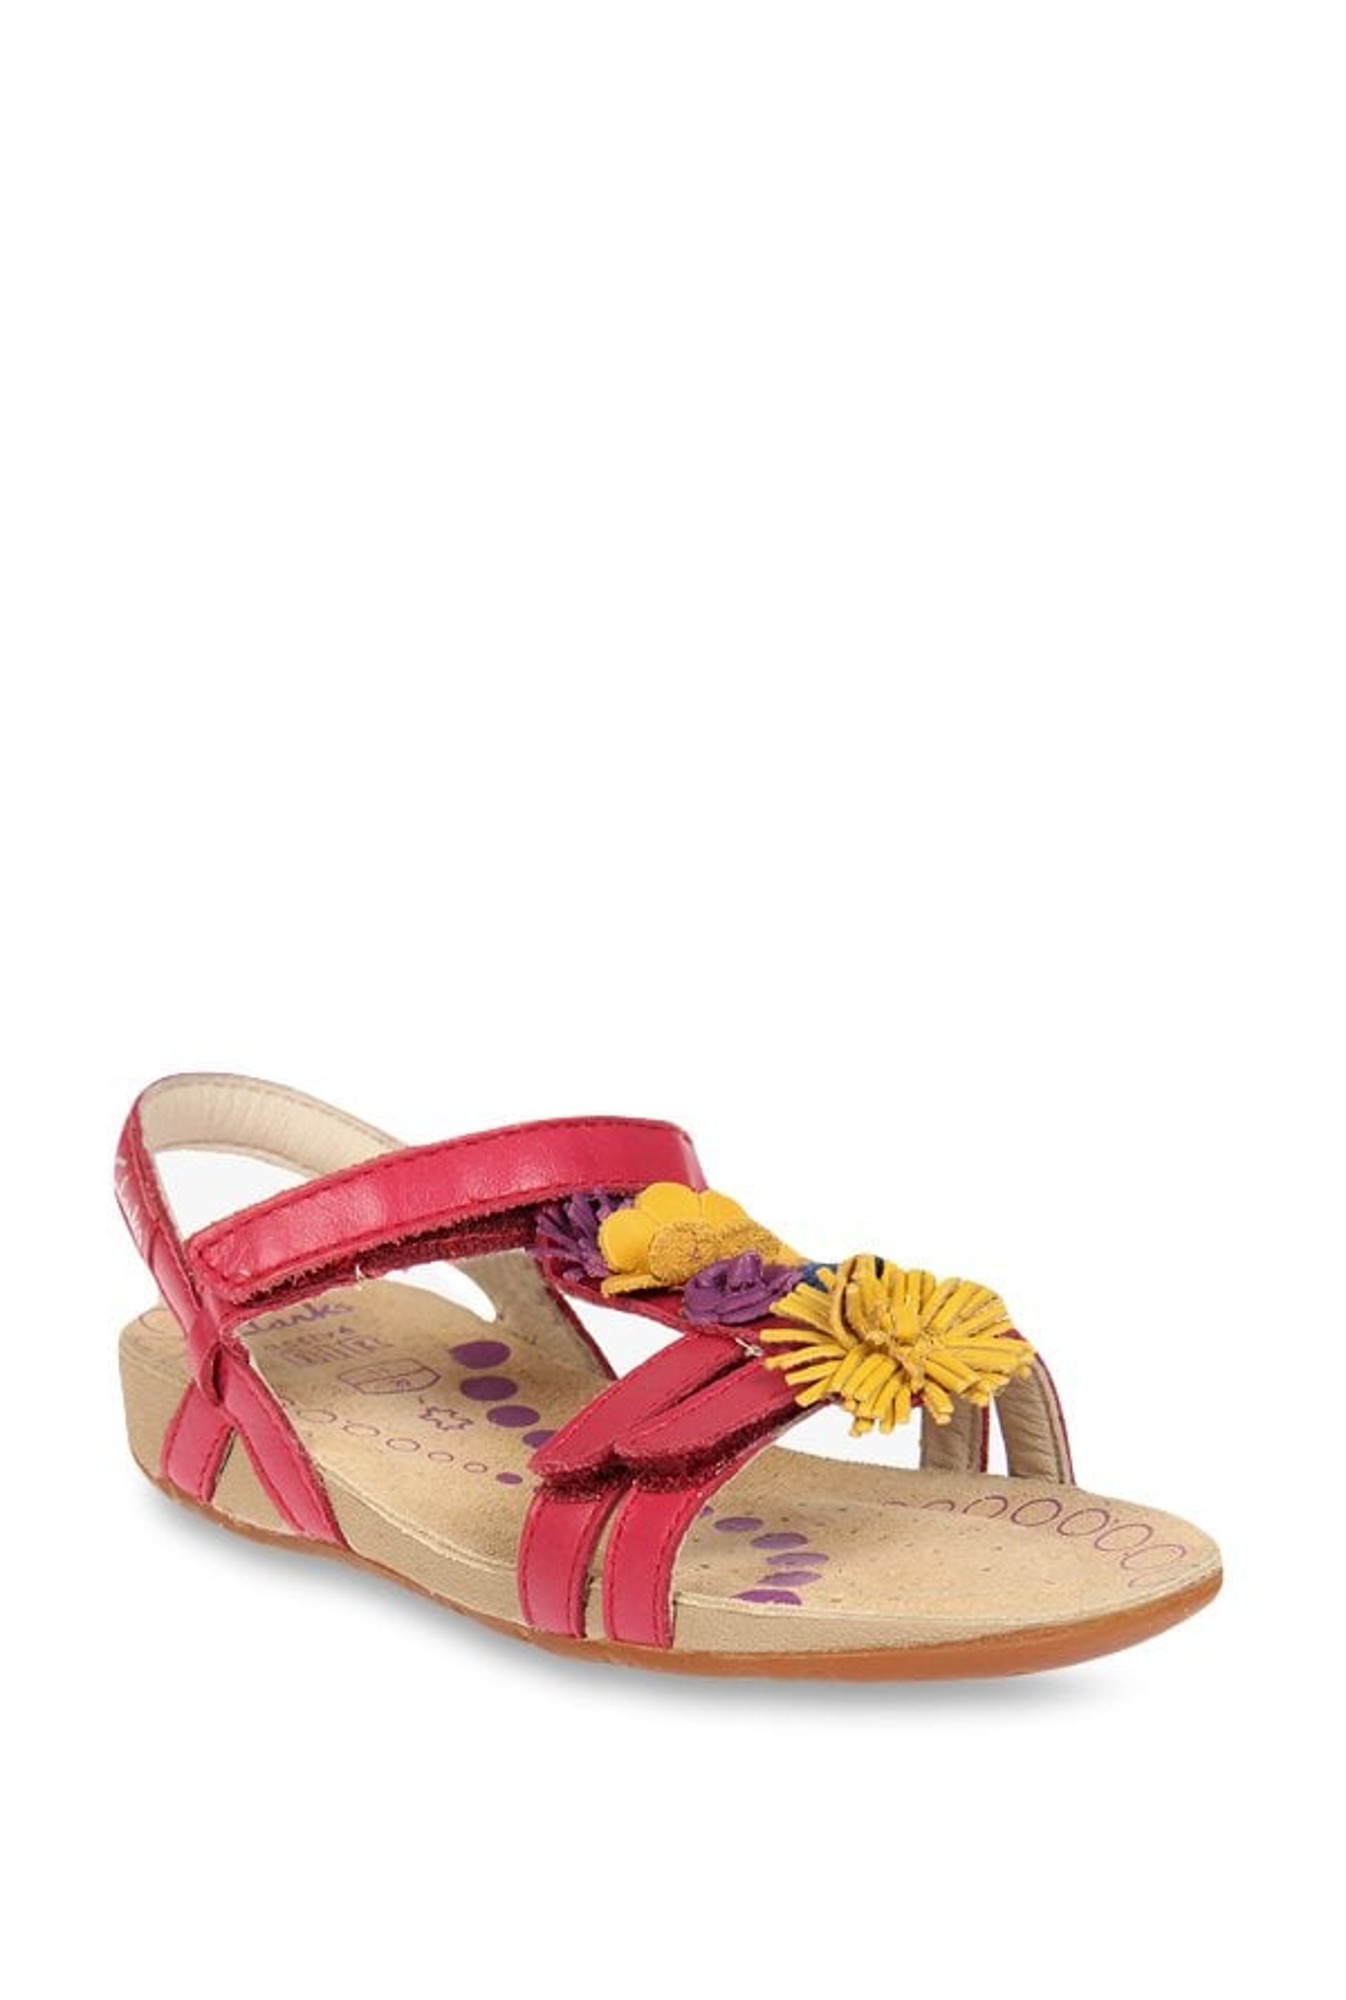 clarks rio flower sandals